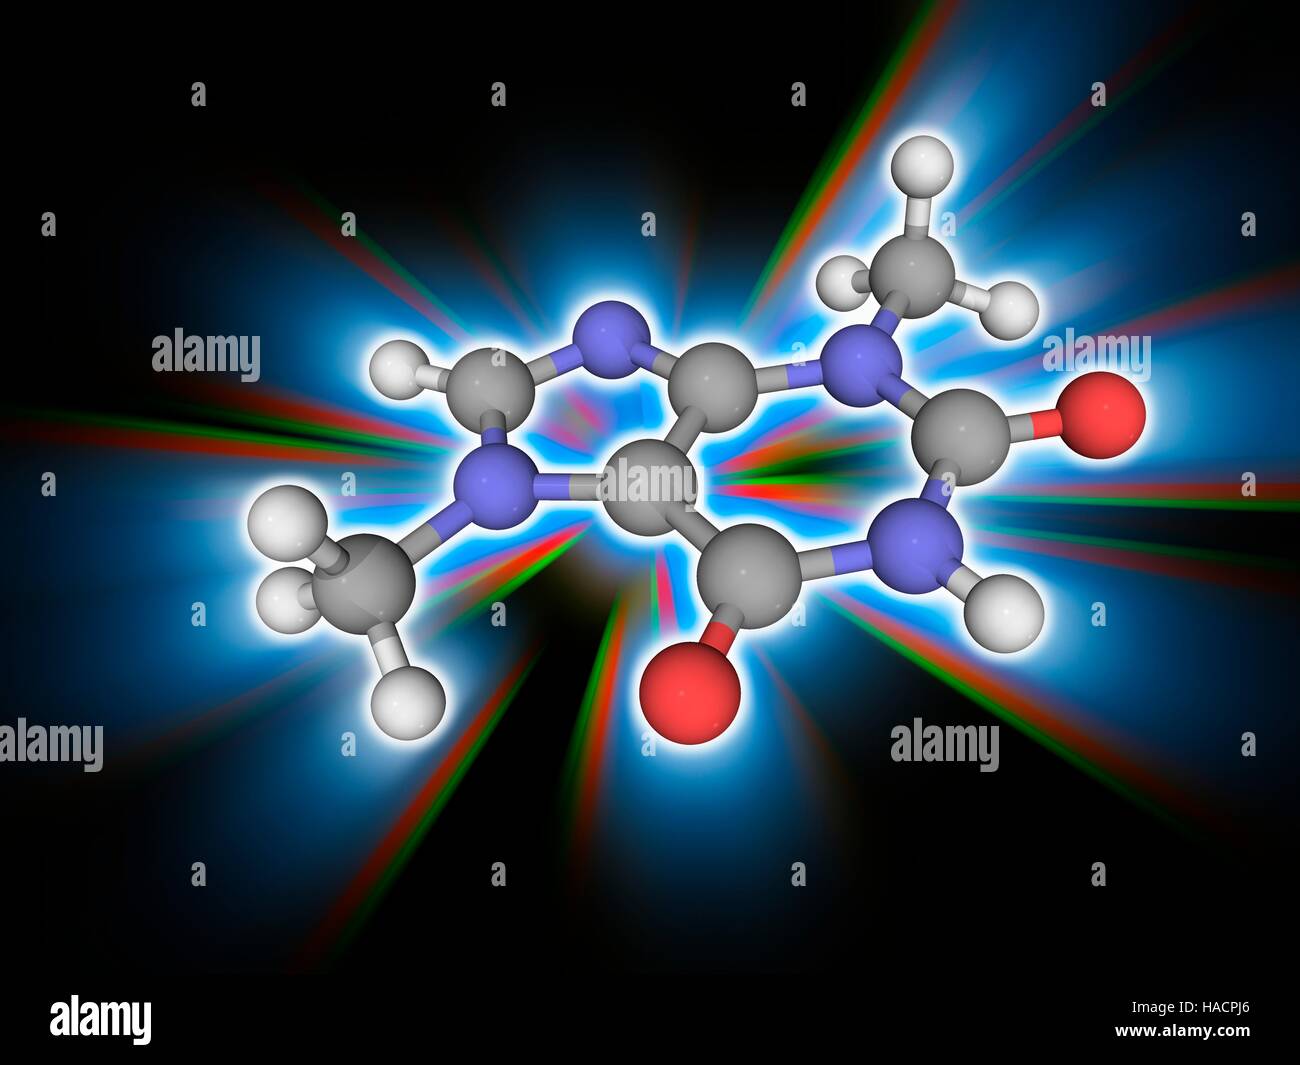 Theobromin. Molekülmodell bittere Alkaloid chemische Theobromin (C7. H8. N4. O2), gefunden in der Kakao-Pflanze und Produkte aus Pflanzen wie Kakao und Schokolade. Atome als Kugeln dargestellt werden und sind farblich gekennzeichnet: Kohlenstoff (grau), Wasserstoff (weiß), Stickstoff (blau) und Sauerstoff (rot). Abbildung. Stockfoto